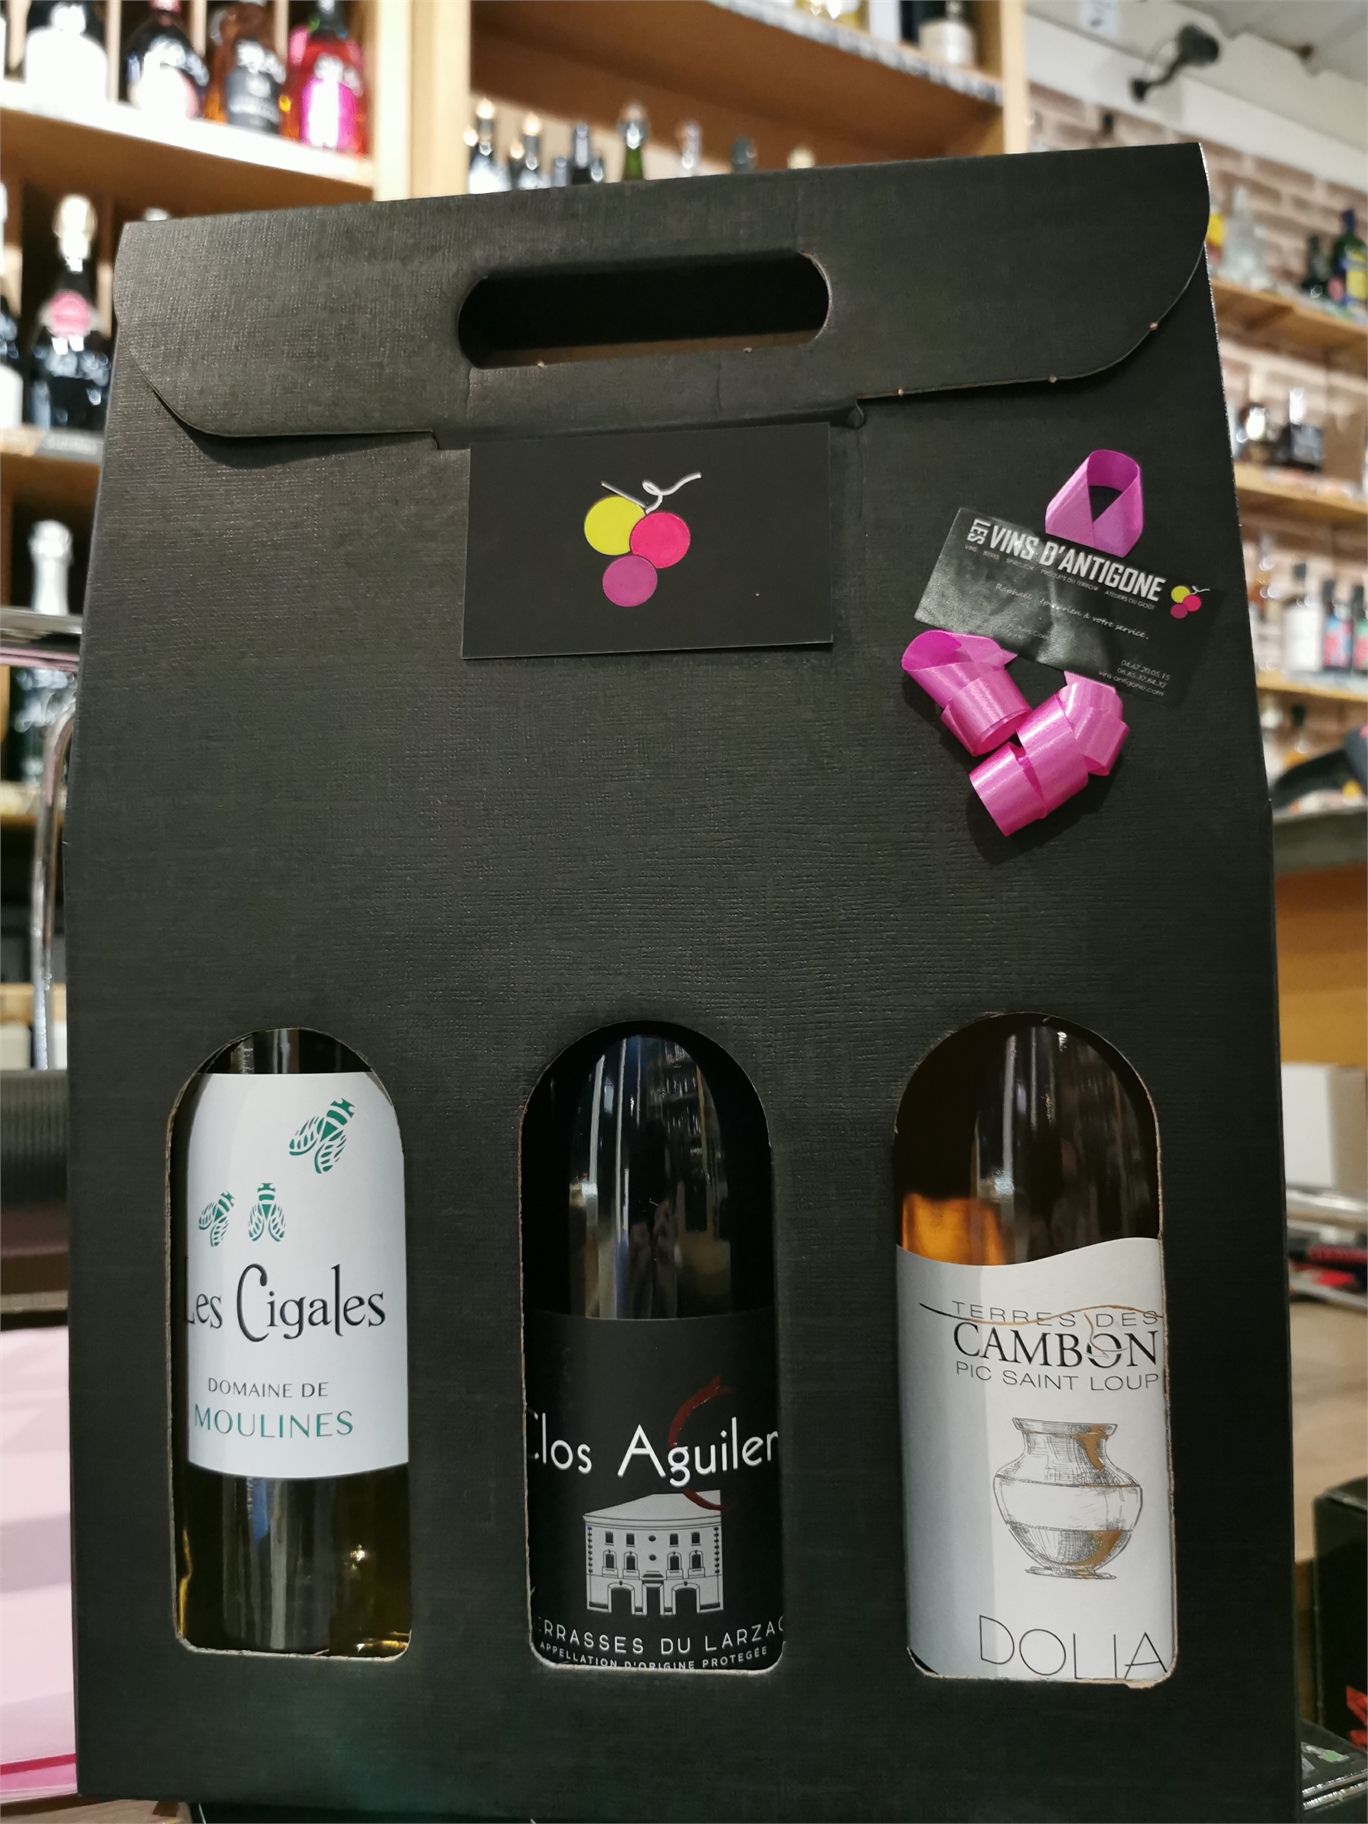 Vins rouges du Languedoc - Coffret cadeau - 3 bouteilles